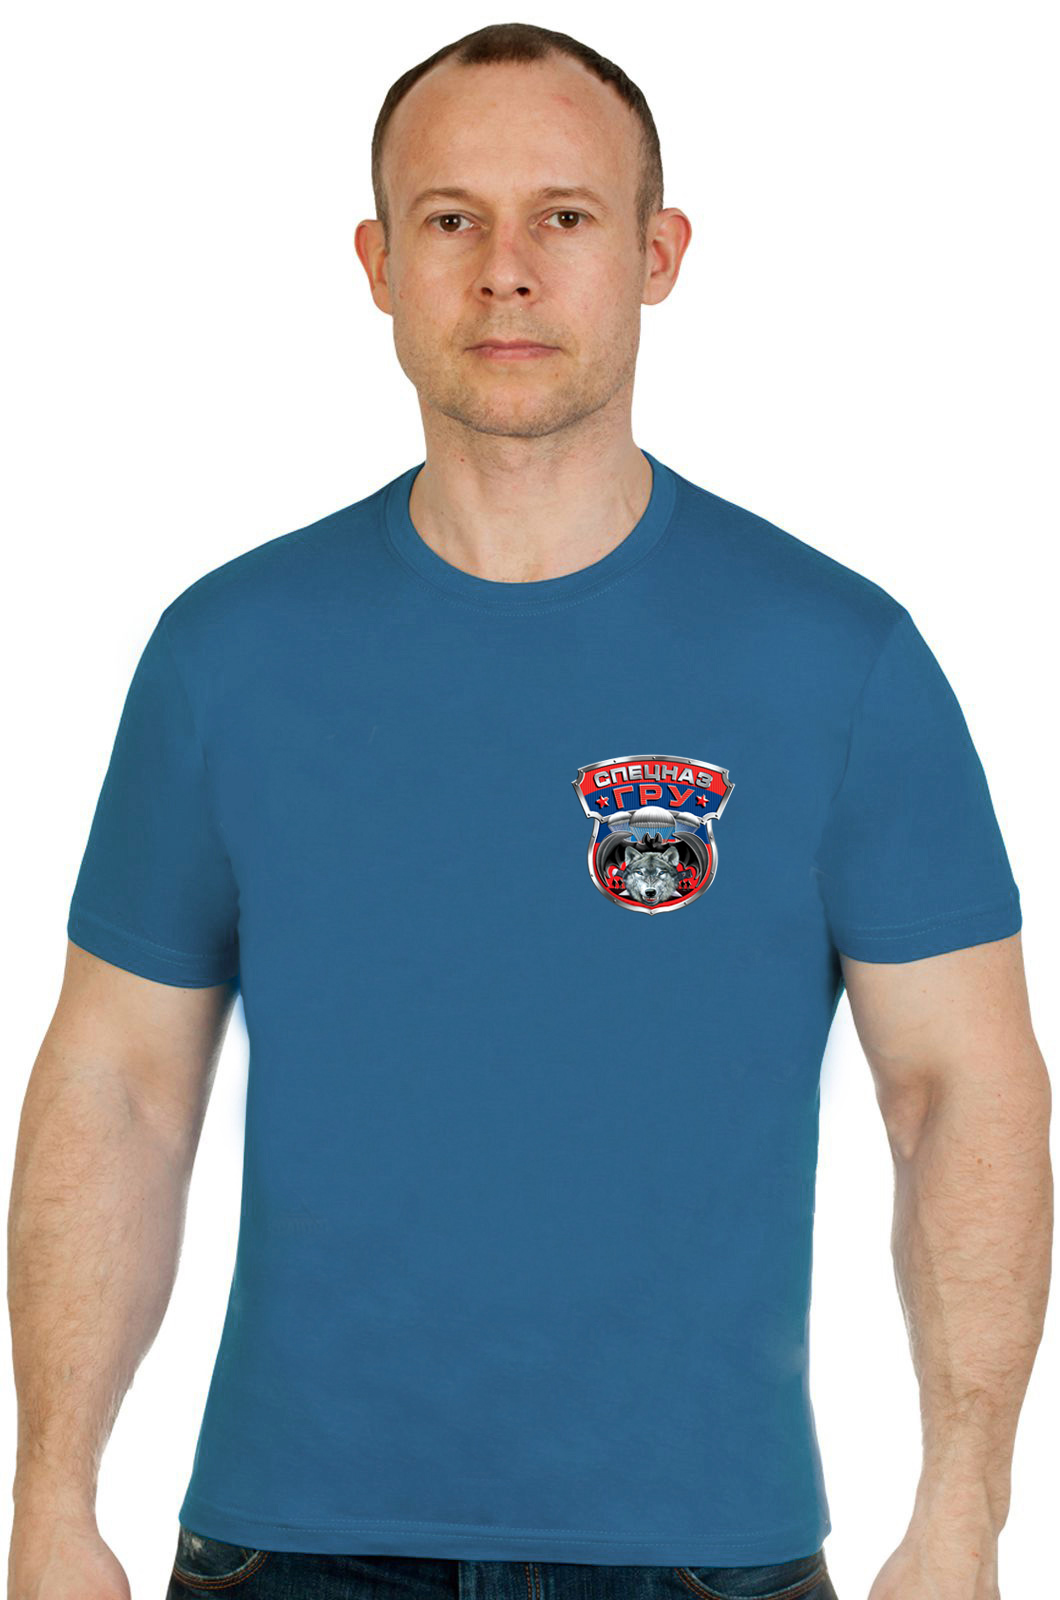 Купить уникальную футболку с эмблемой Спецназ ГРУ по привлекательной цене